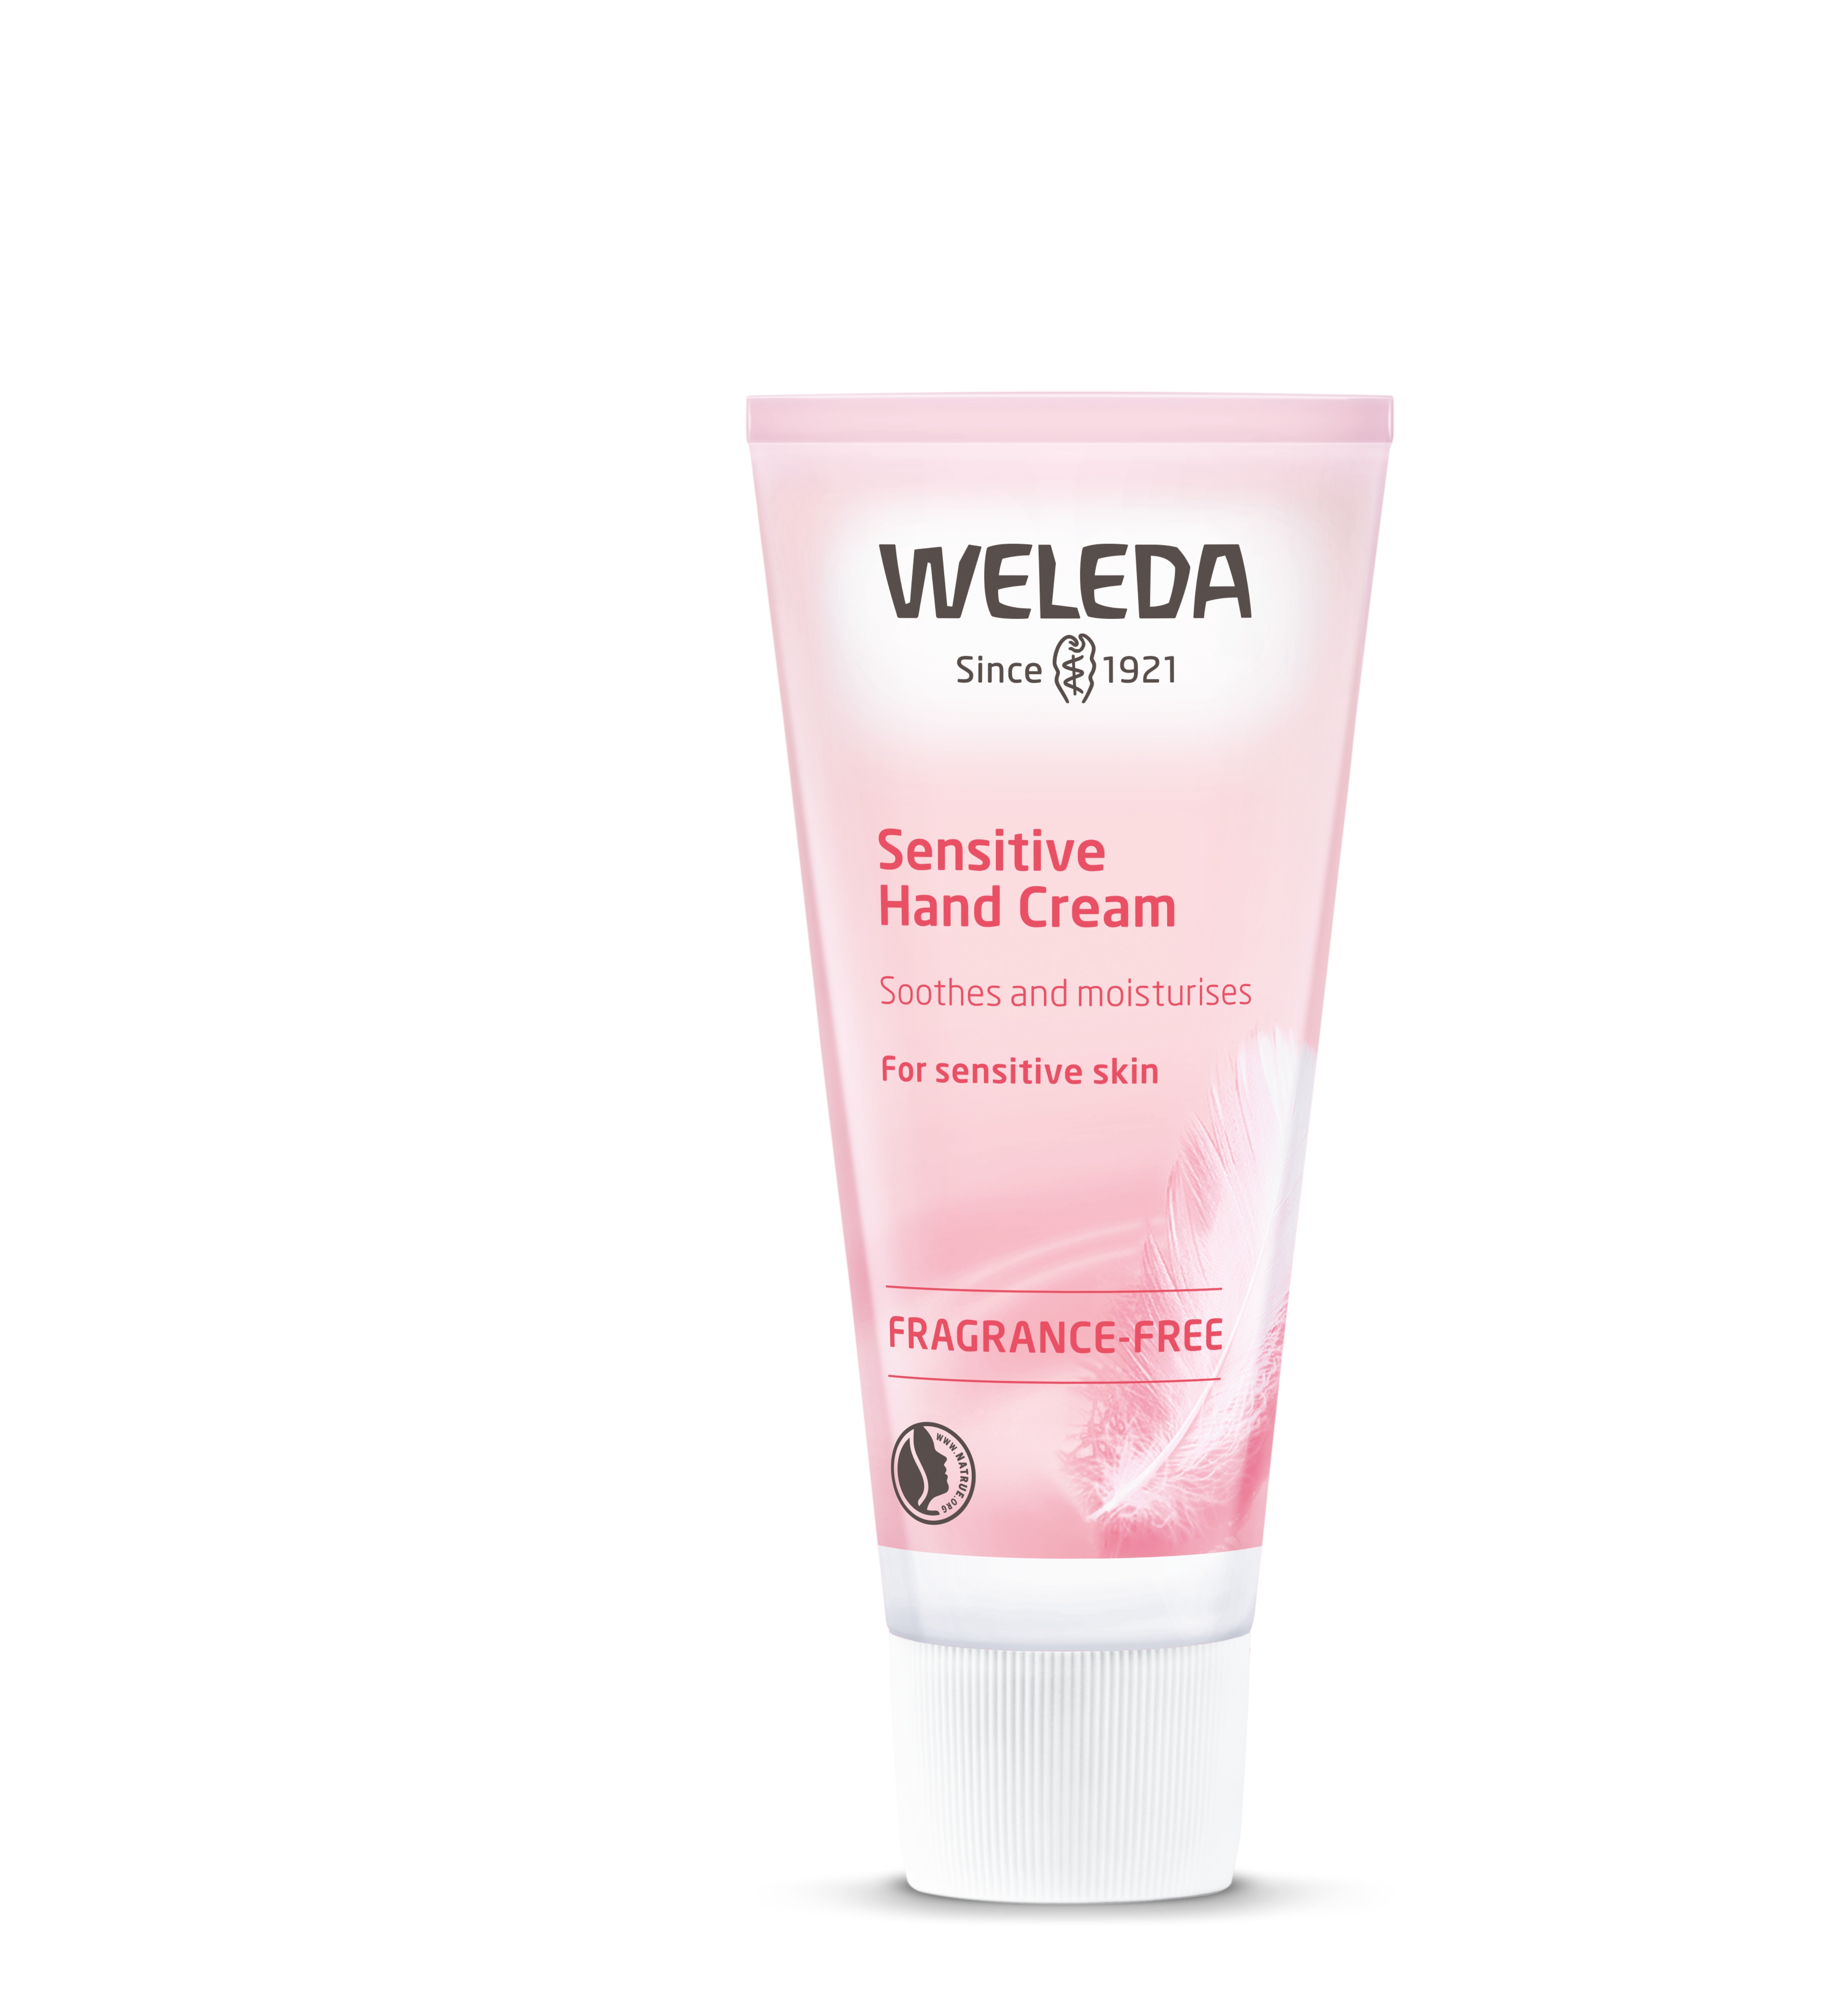 Weleda Sensitive Hand Cream 